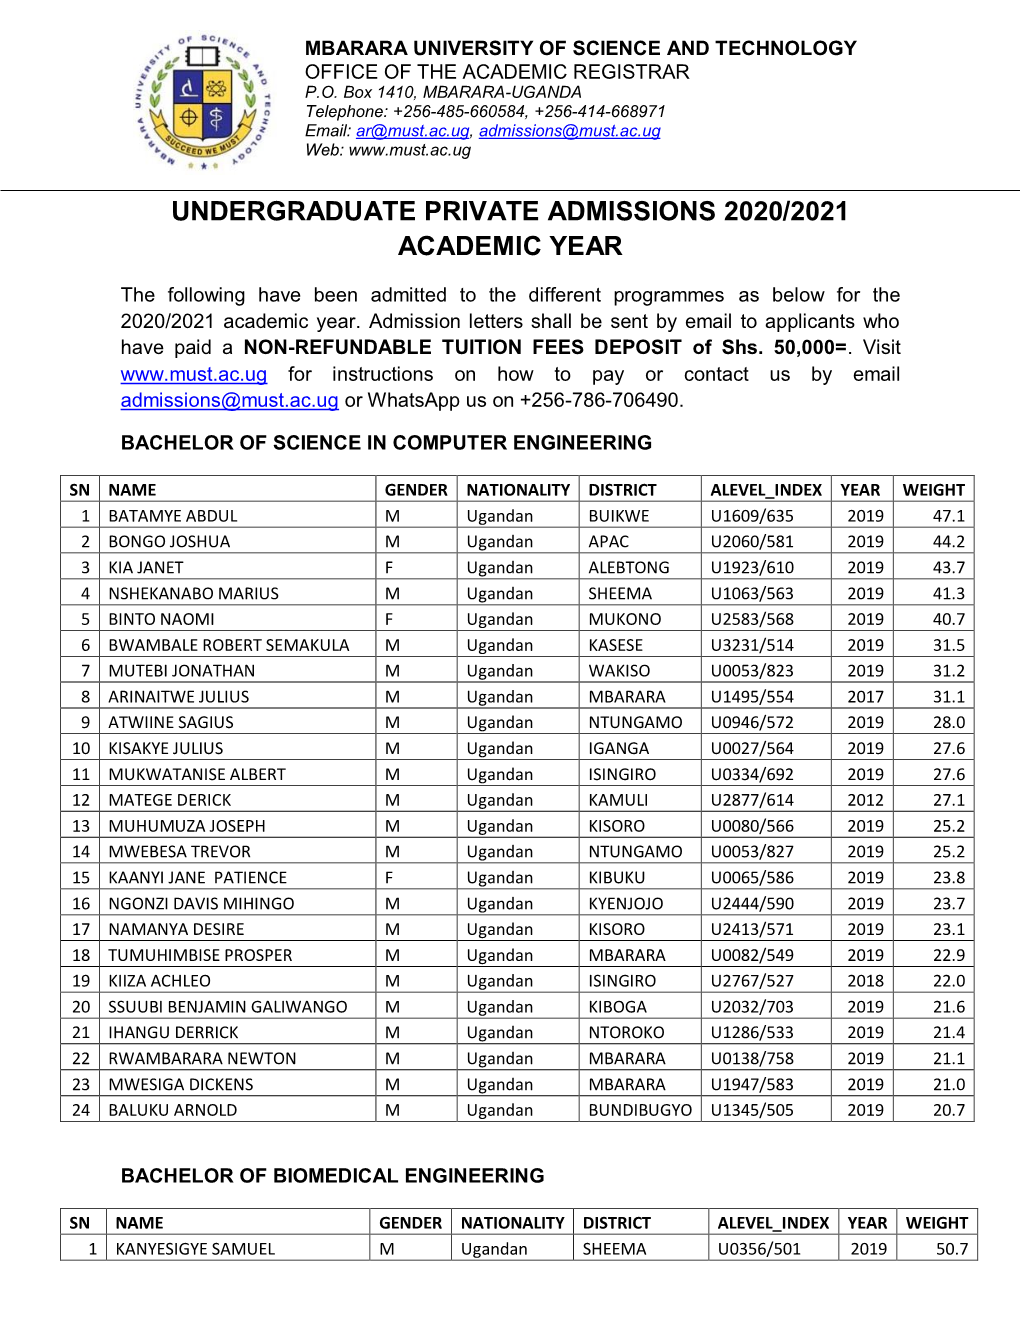 Undergraduate Private Admissions 2020/2021 Academic Year